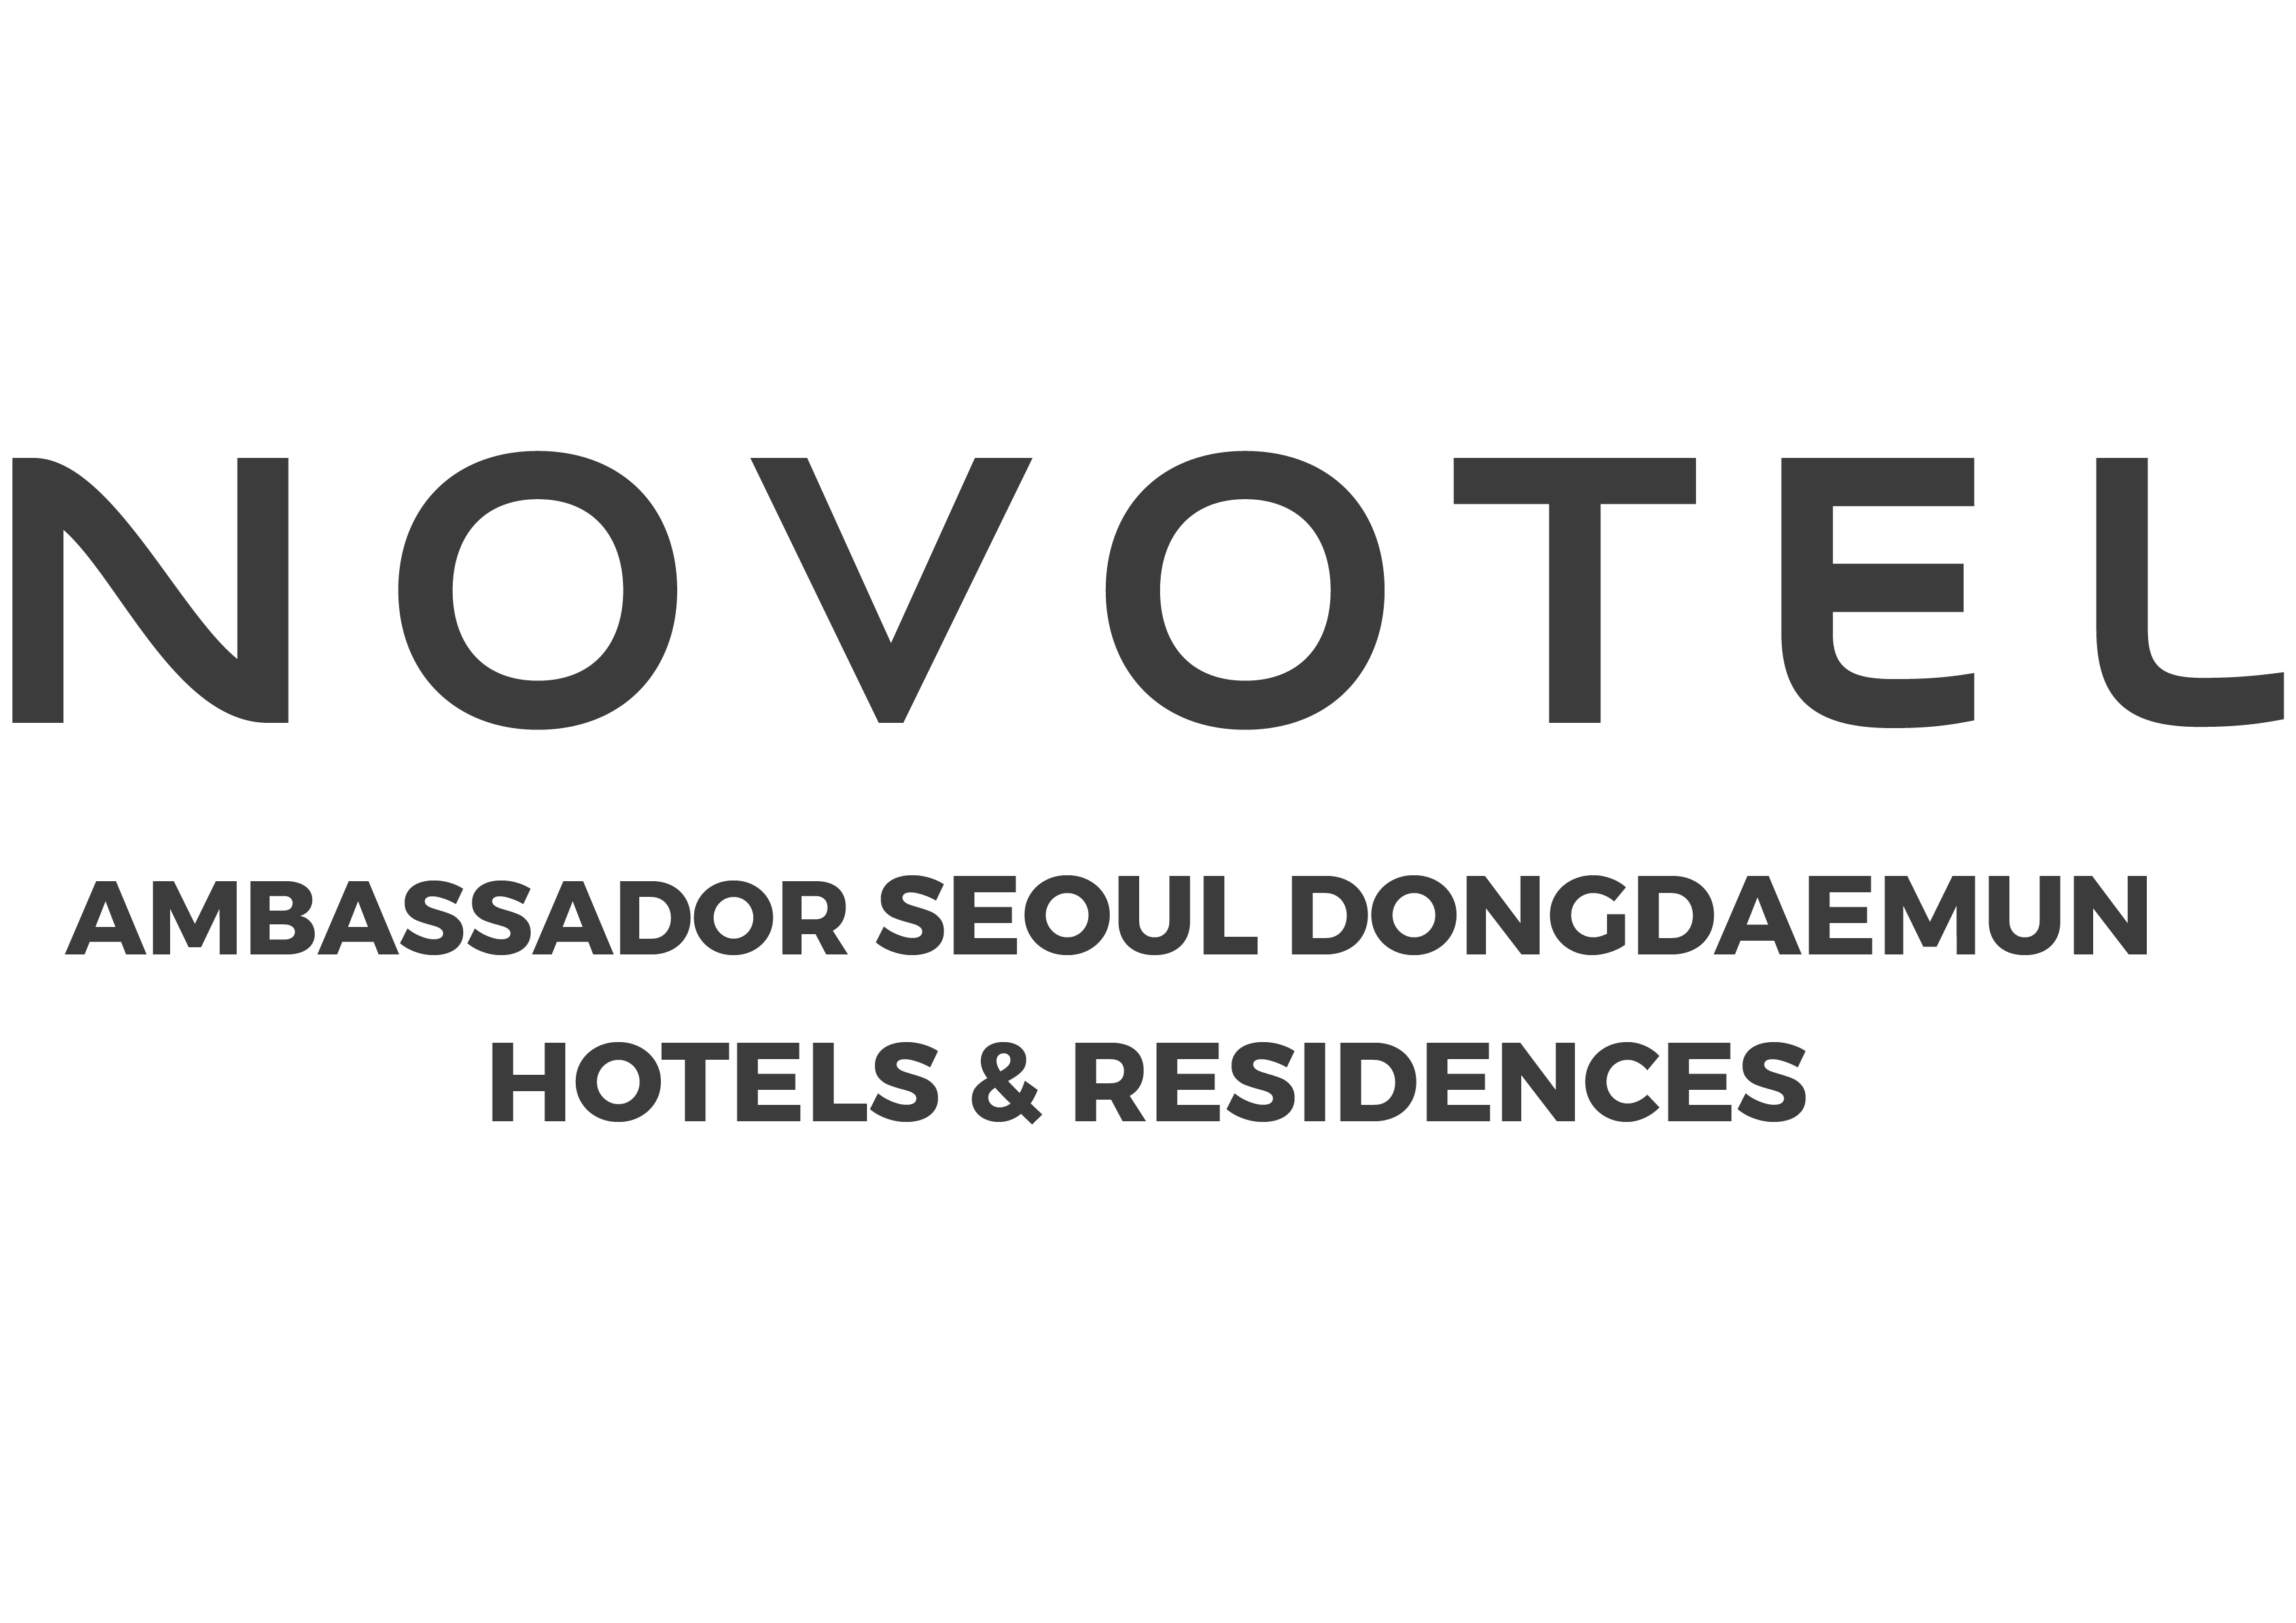 Novotel Ambassador Seoul Dongdaemun Hotels & Residences logo image